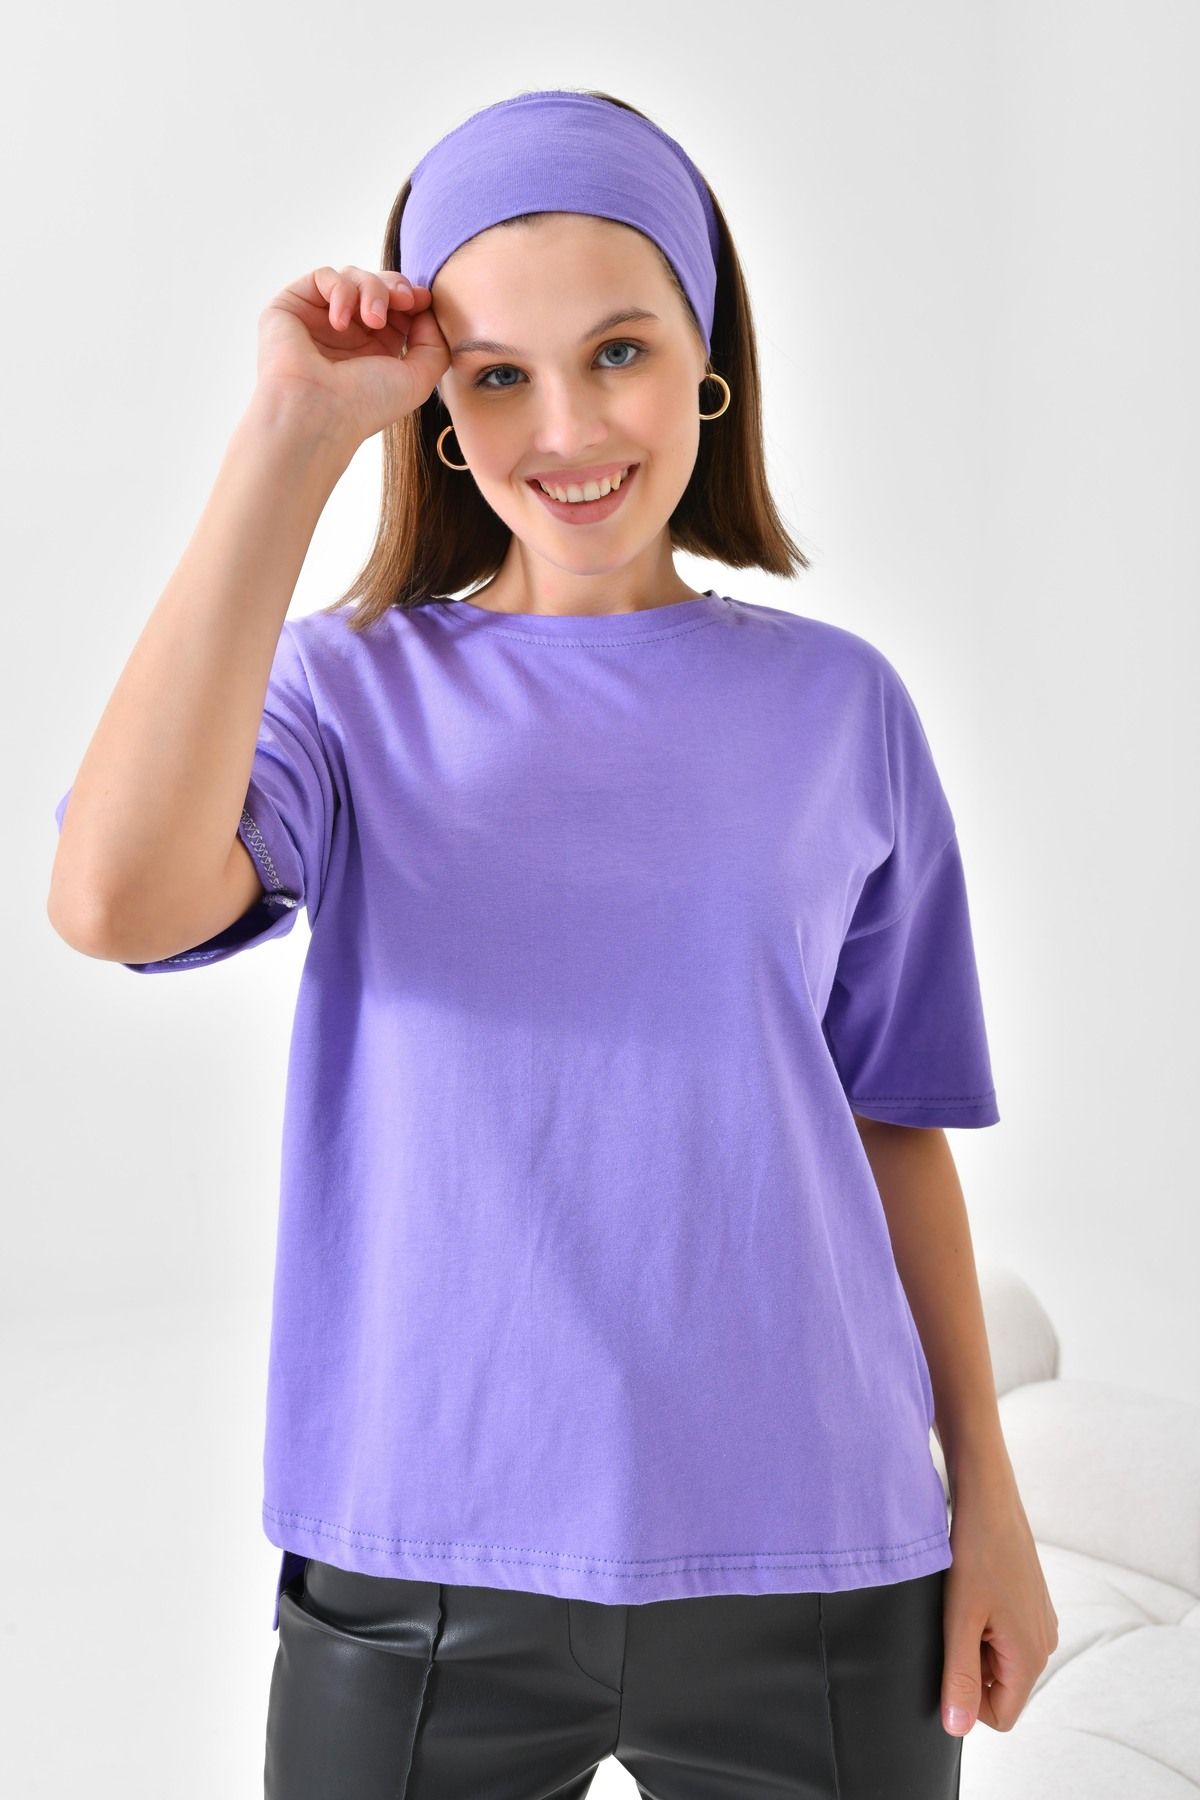 mirach %100 Pamuk Tişört Kısa Kollu Düz Model Kadın T-shirt Pamuklu Tişört Lavanta (BANDANA HEDİYELİ)